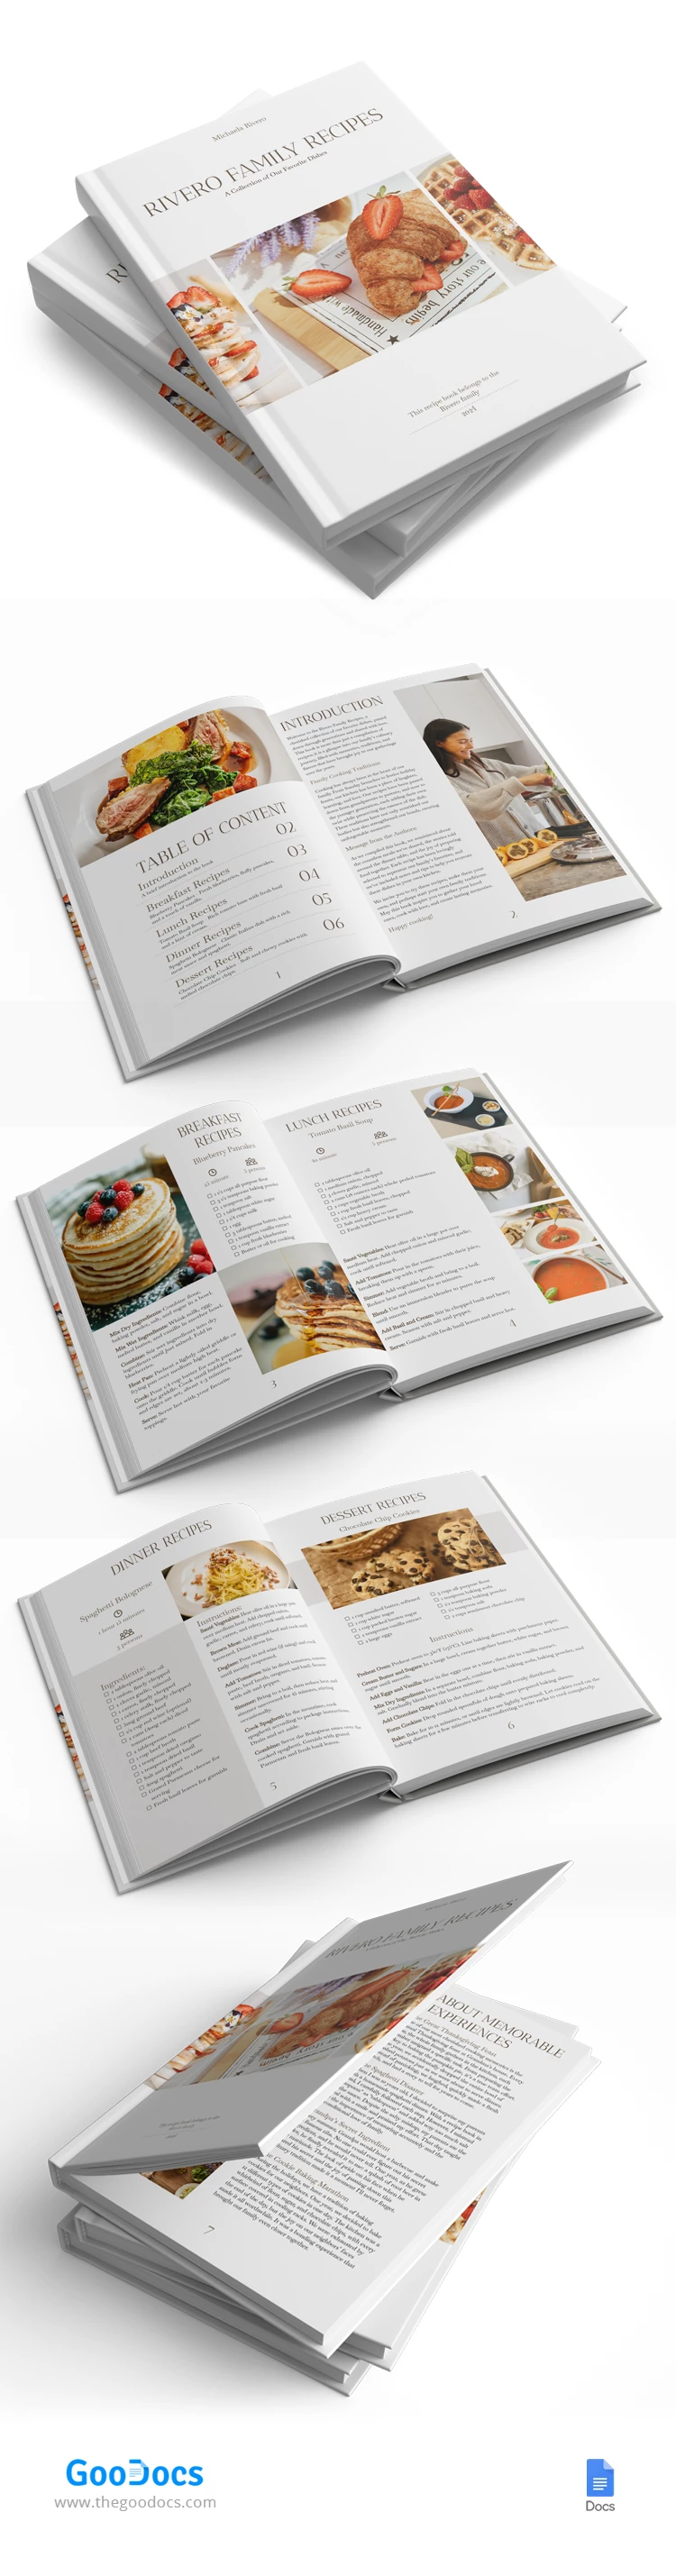 Libro delle ricette di famiglia - free Google Docs Template - 10068787